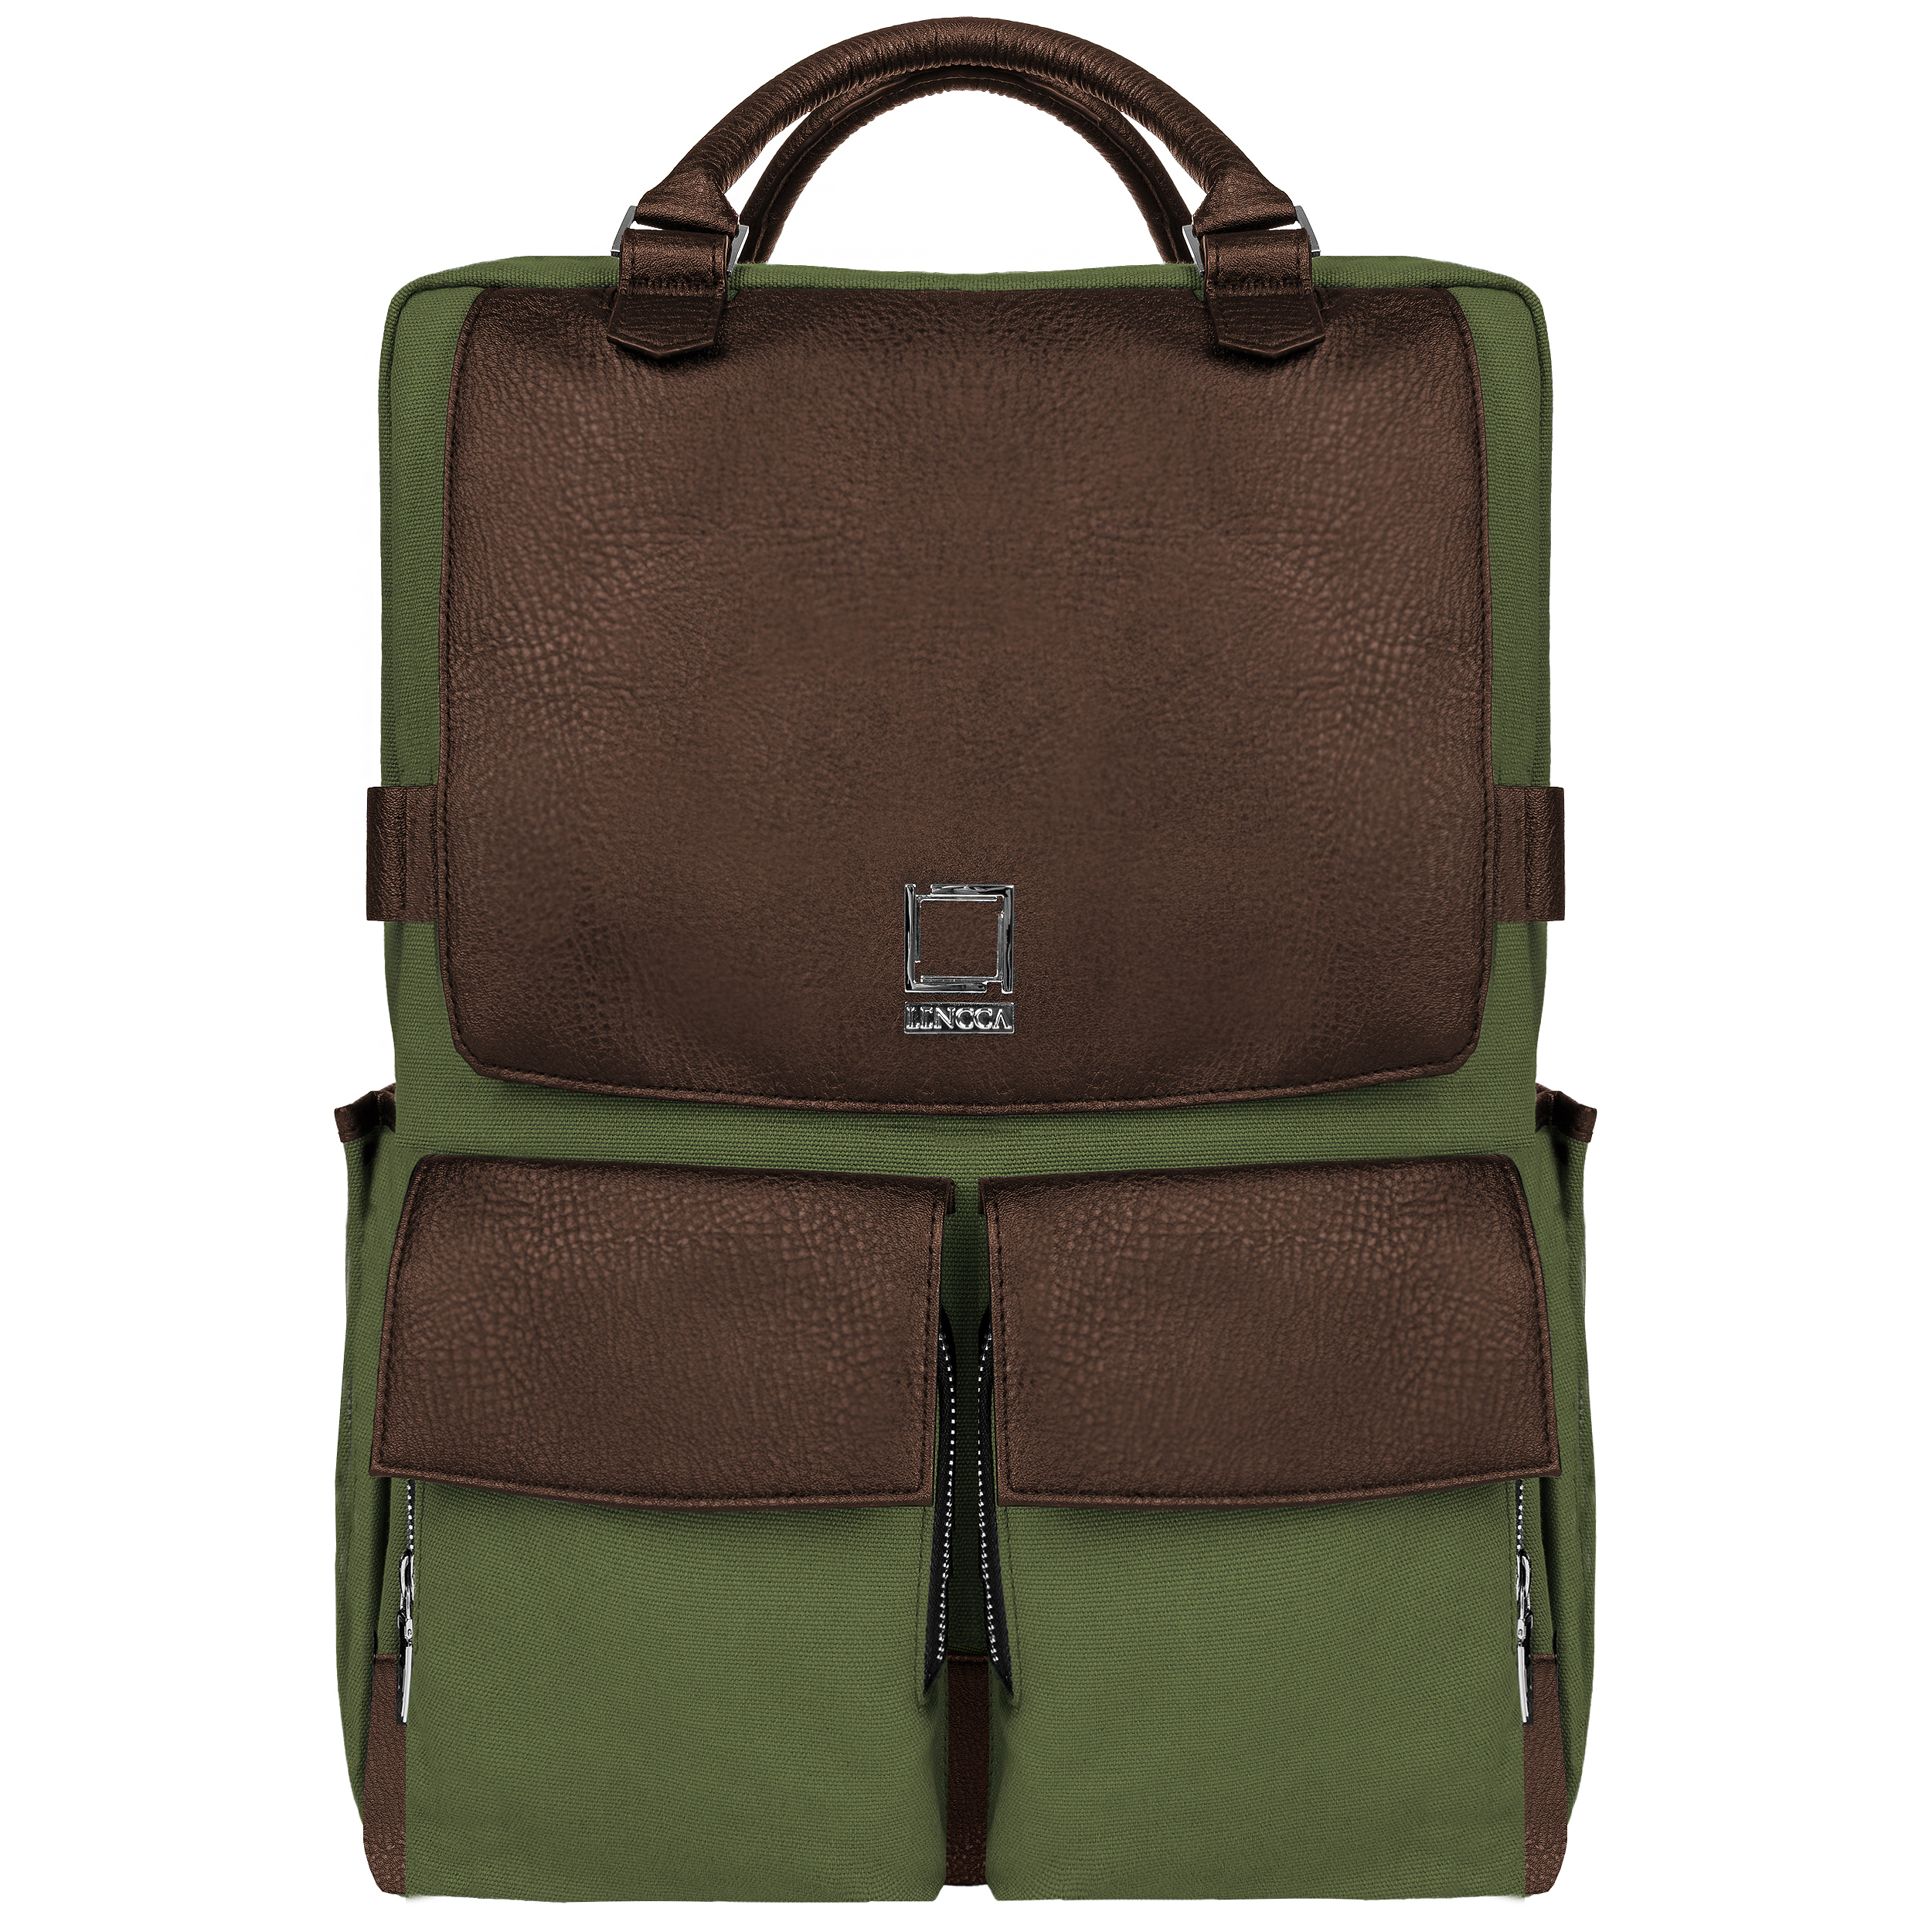 Lencca Novo Crossover Designer Travel Backpack Bag fits Acer Laptops up to 15.6"